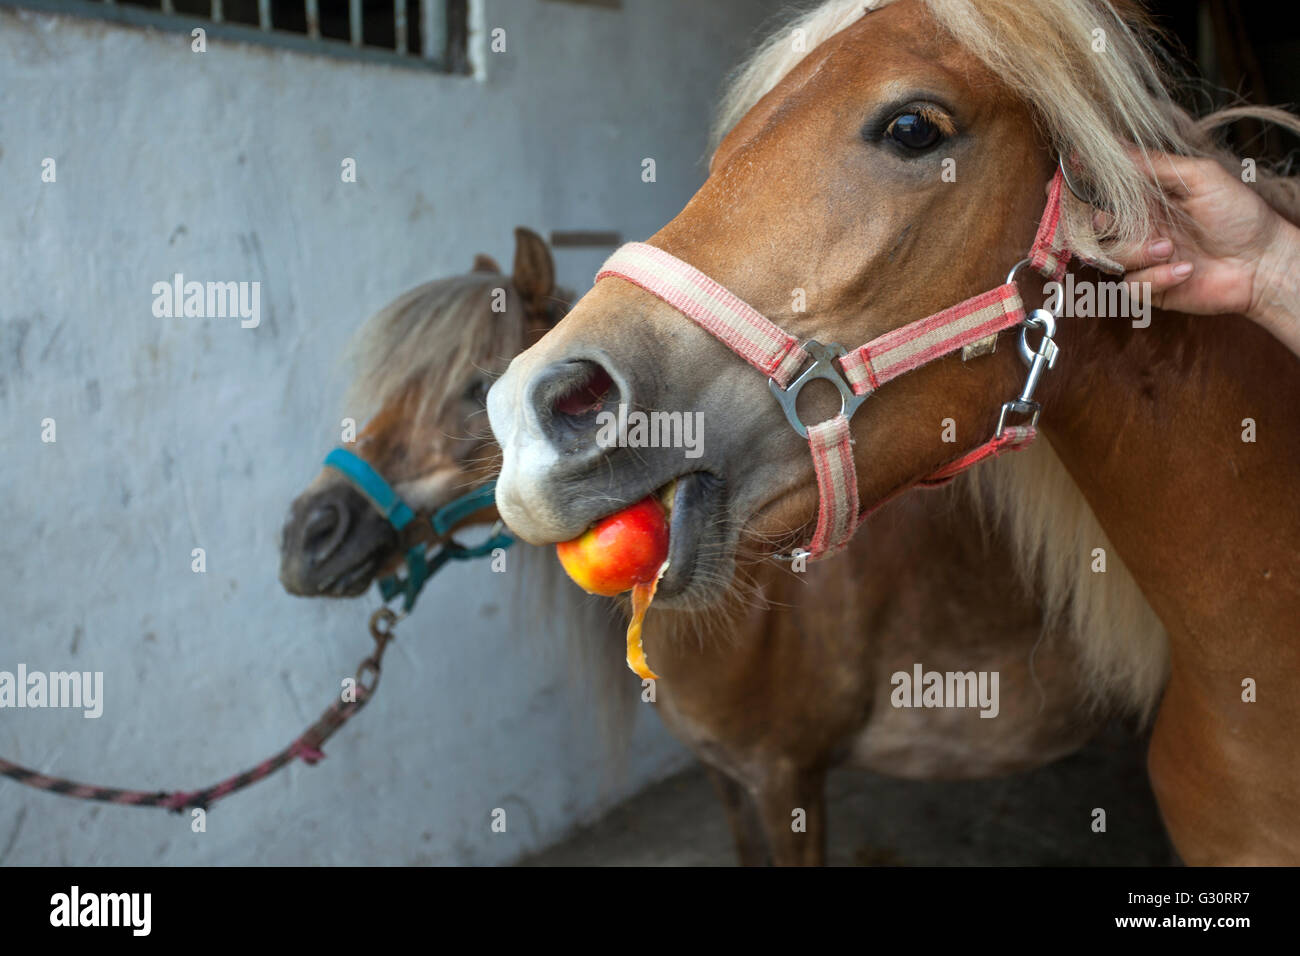 Nourrir un cheval un apple Banque D'Images